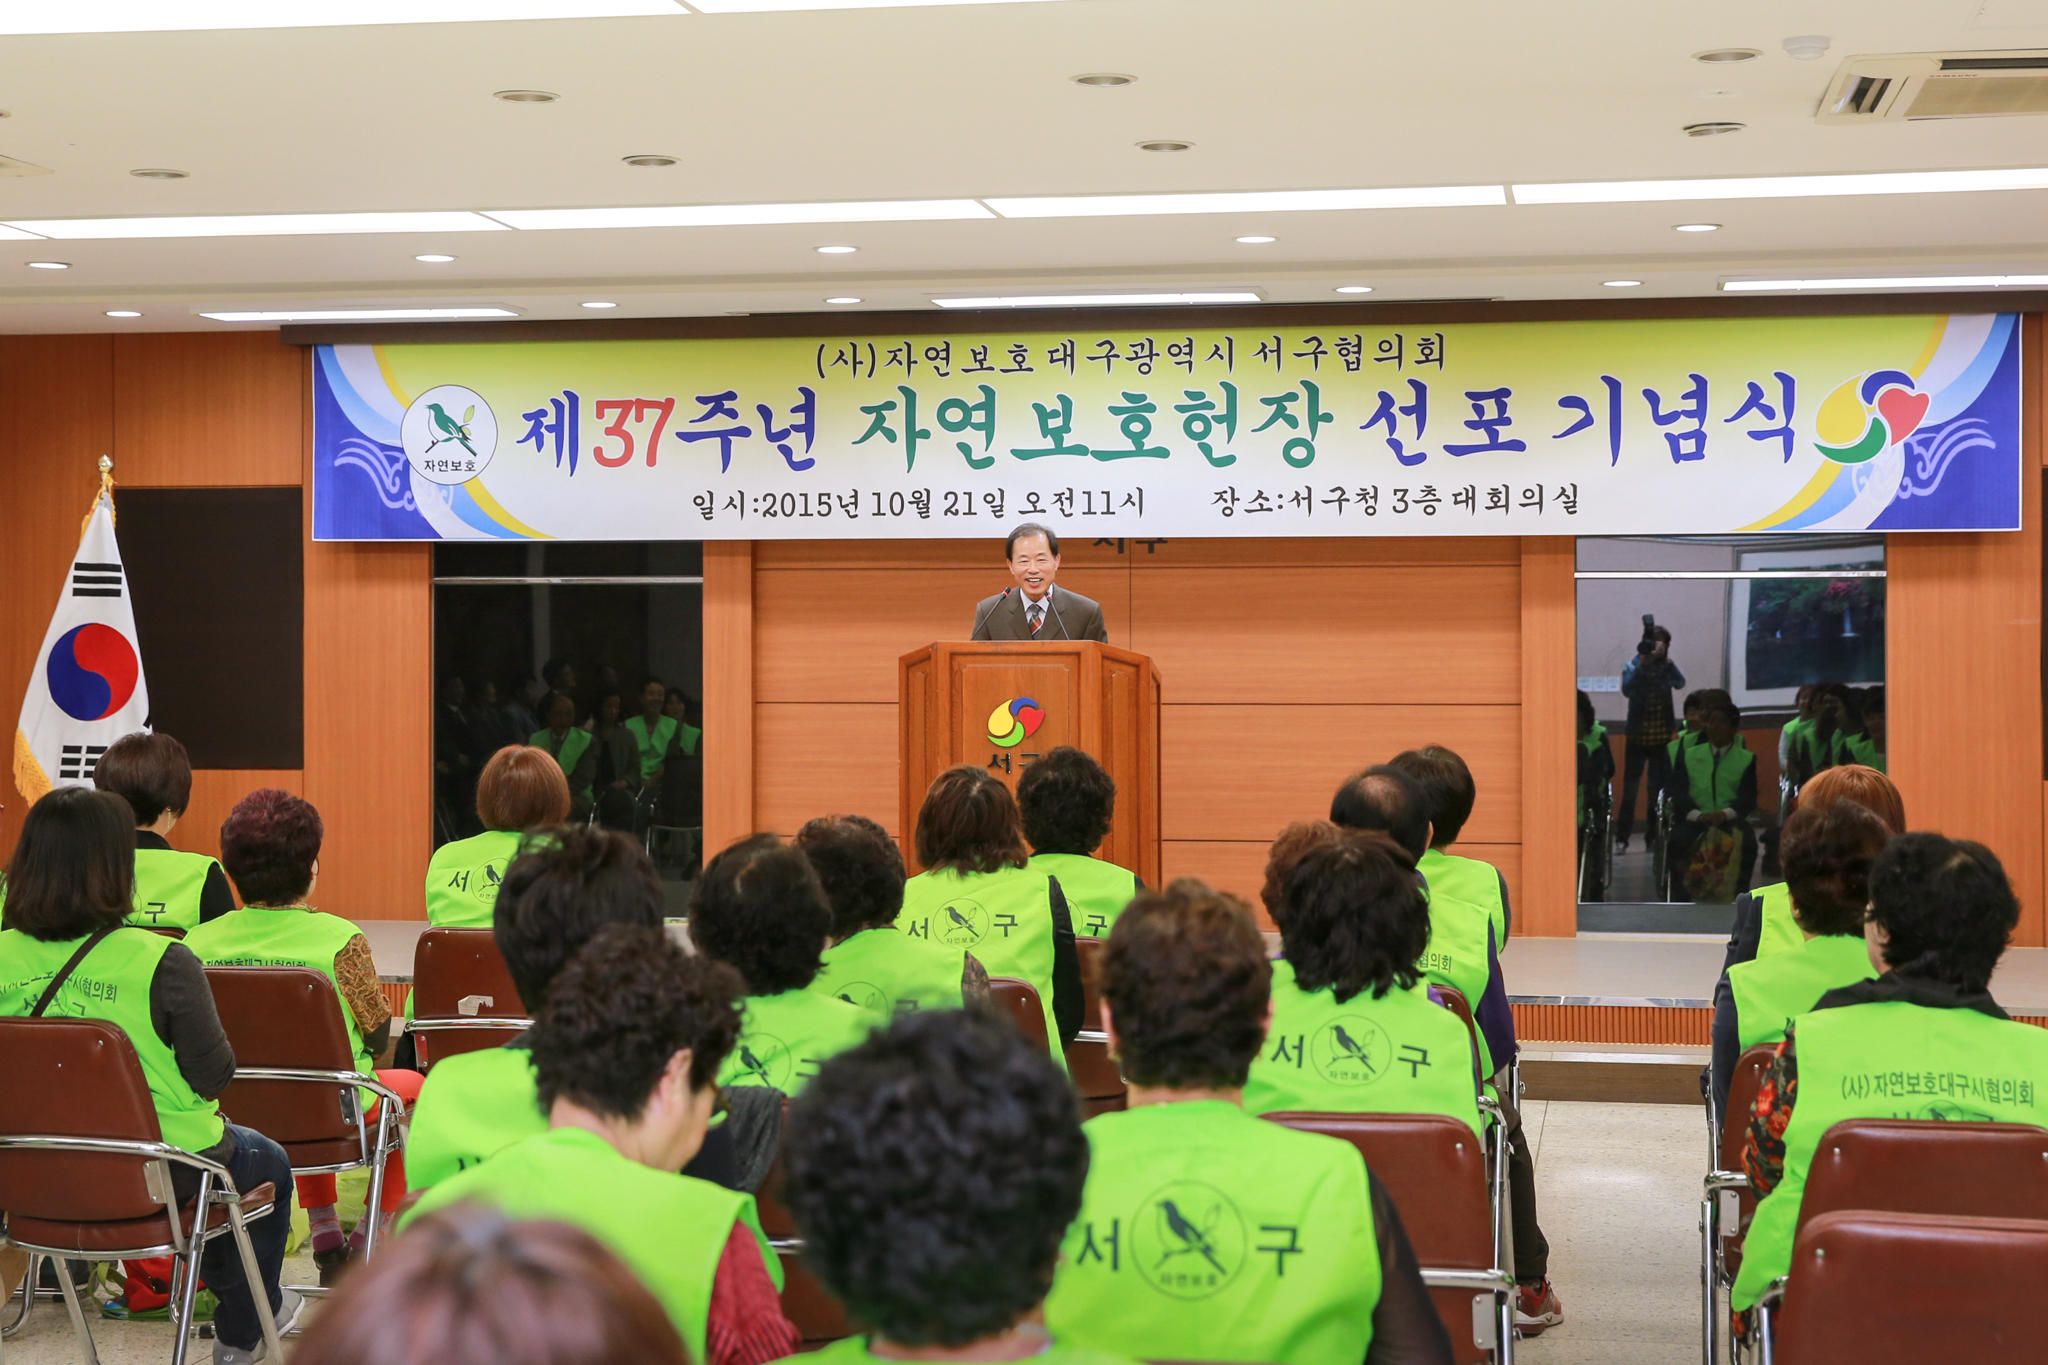 제37주년 자연보호헌장 선포 기념식(10.21, 3층회의실) 3